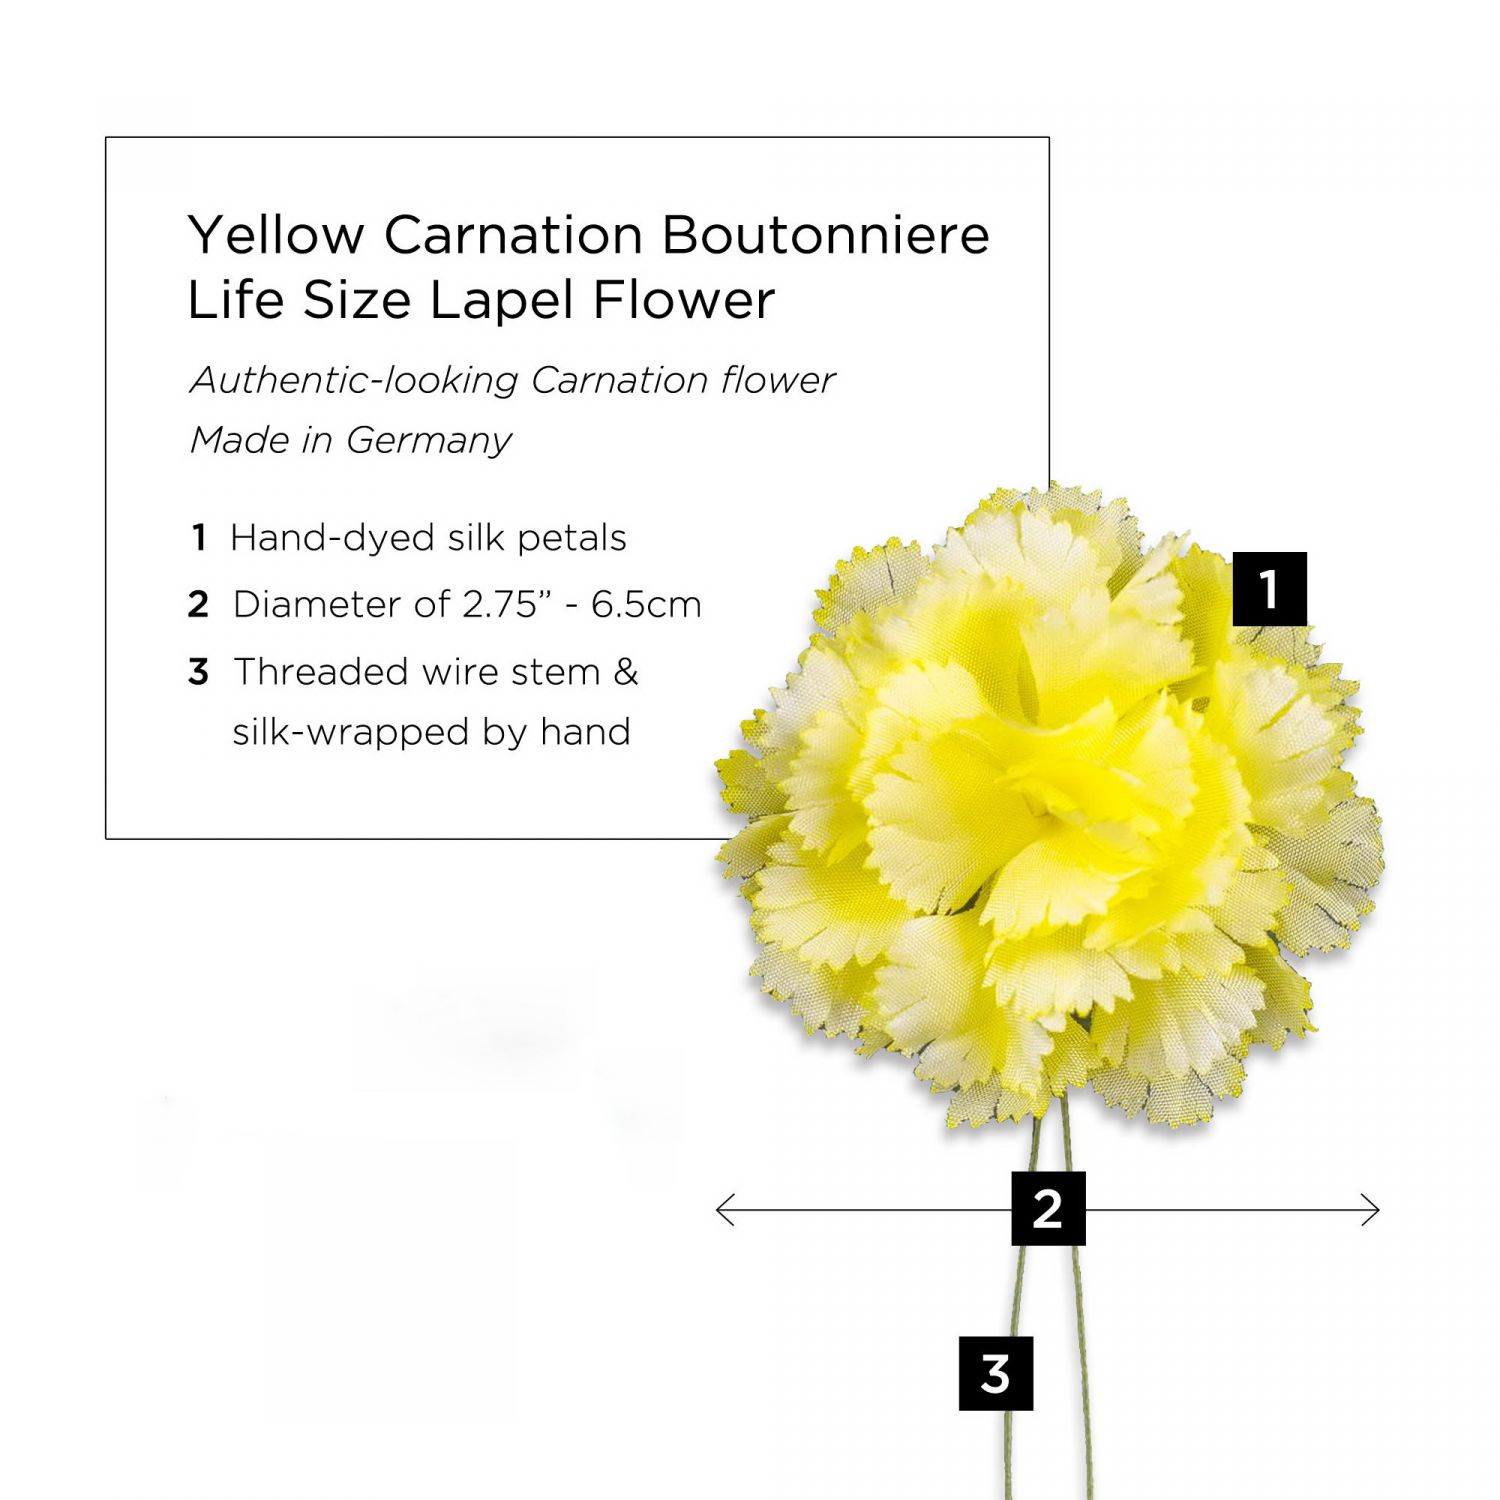 Yellow Carnation Boutonniere Life Size